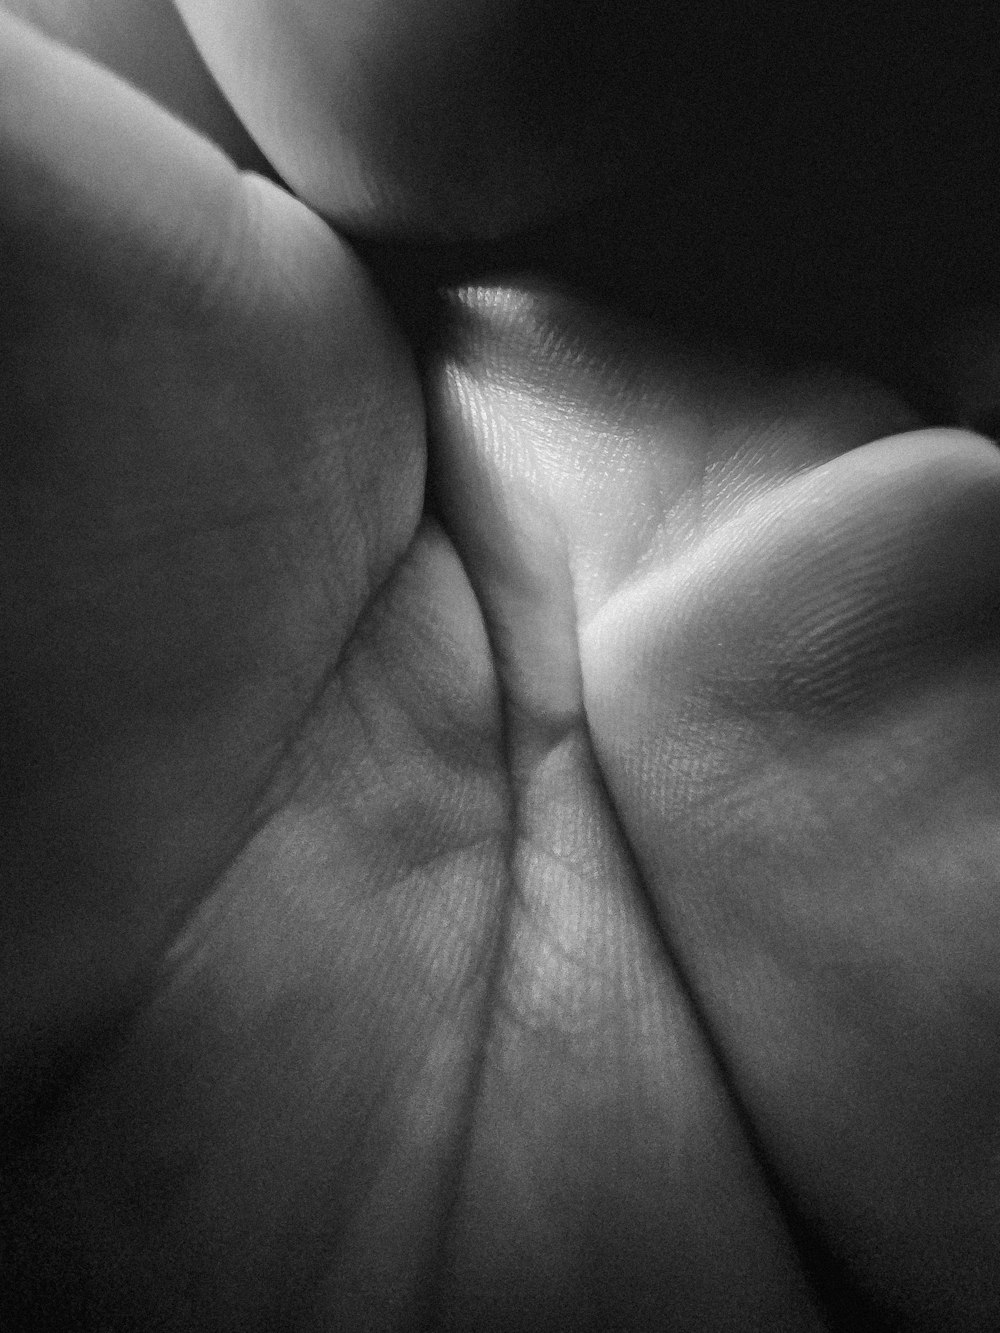 uma foto em preto e branco da mão de uma pessoa